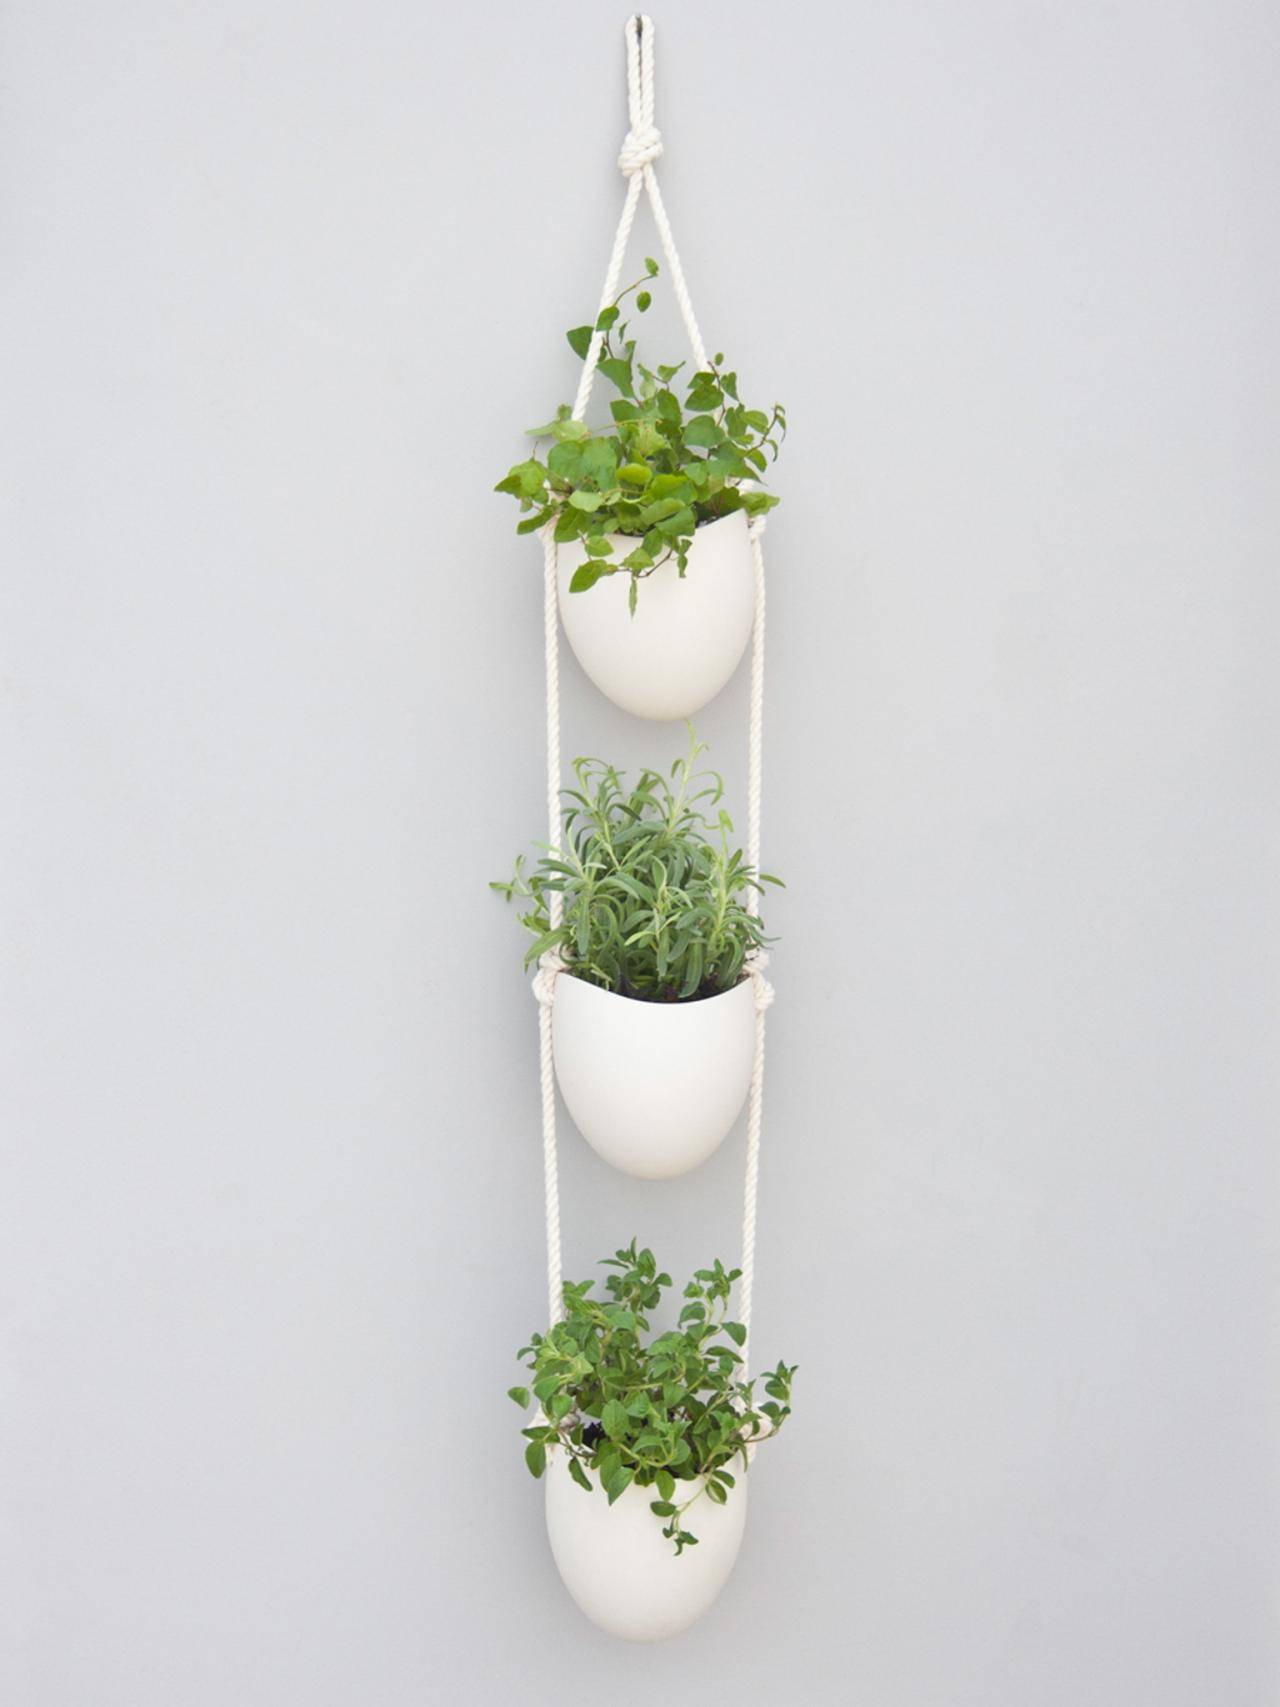 Smart Indoor Hanging Herb Garden Ideas